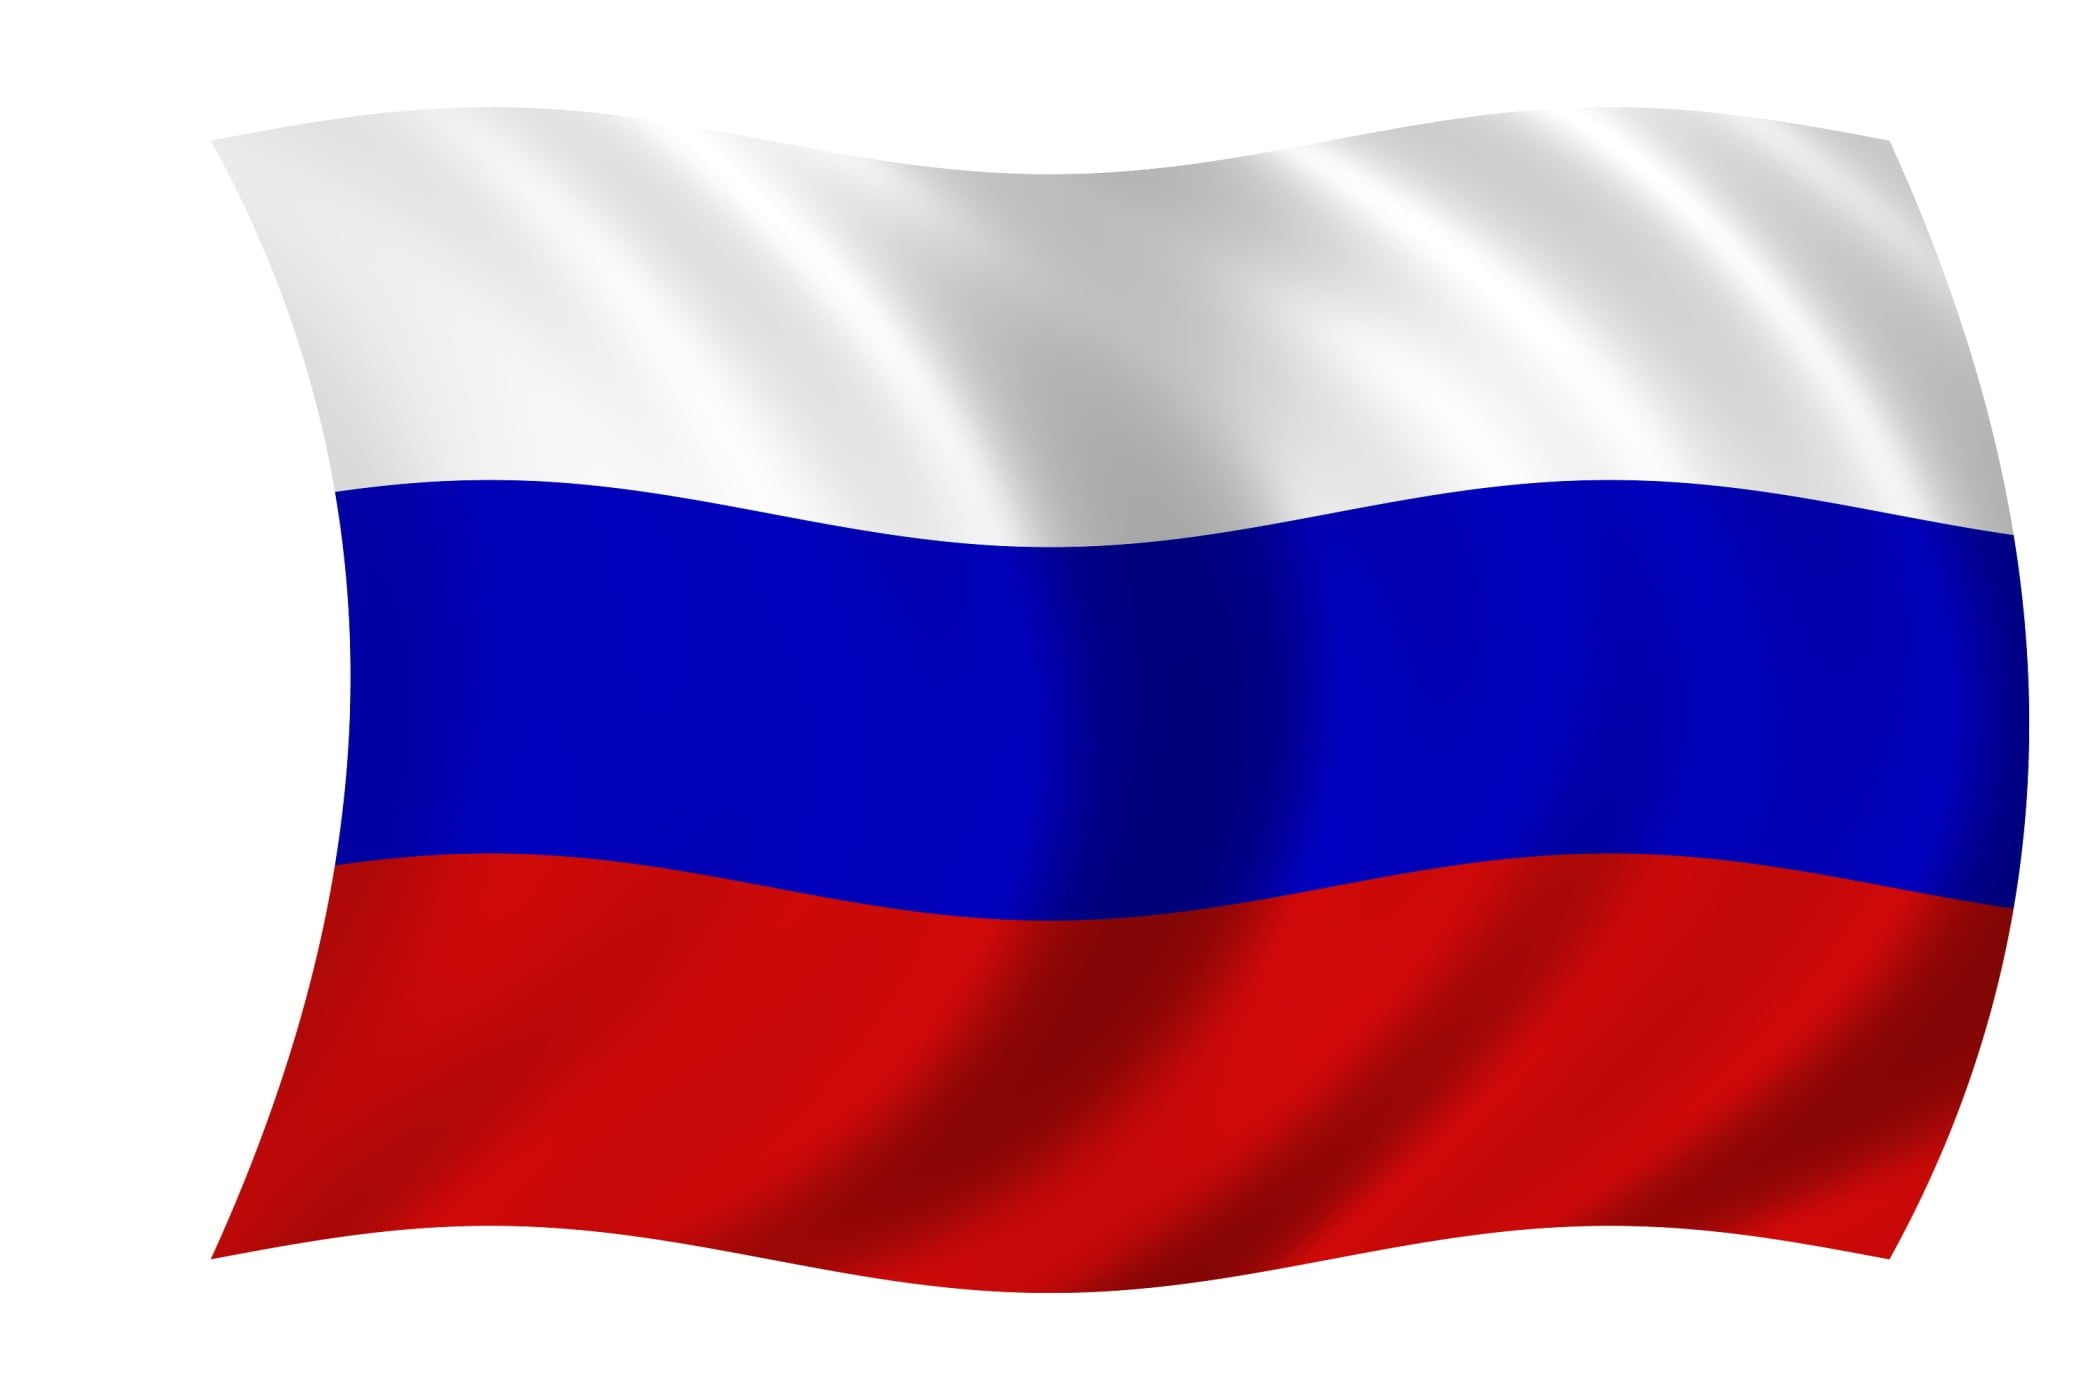 Как выглядит флаг картинка. Флаг России. Ф̆̈л̆̈ӑ̈г̆̈ р̆̈о̆̈с̆̈с̆̈й̈й̈. Флаг Триколор России. ГДАГ России.